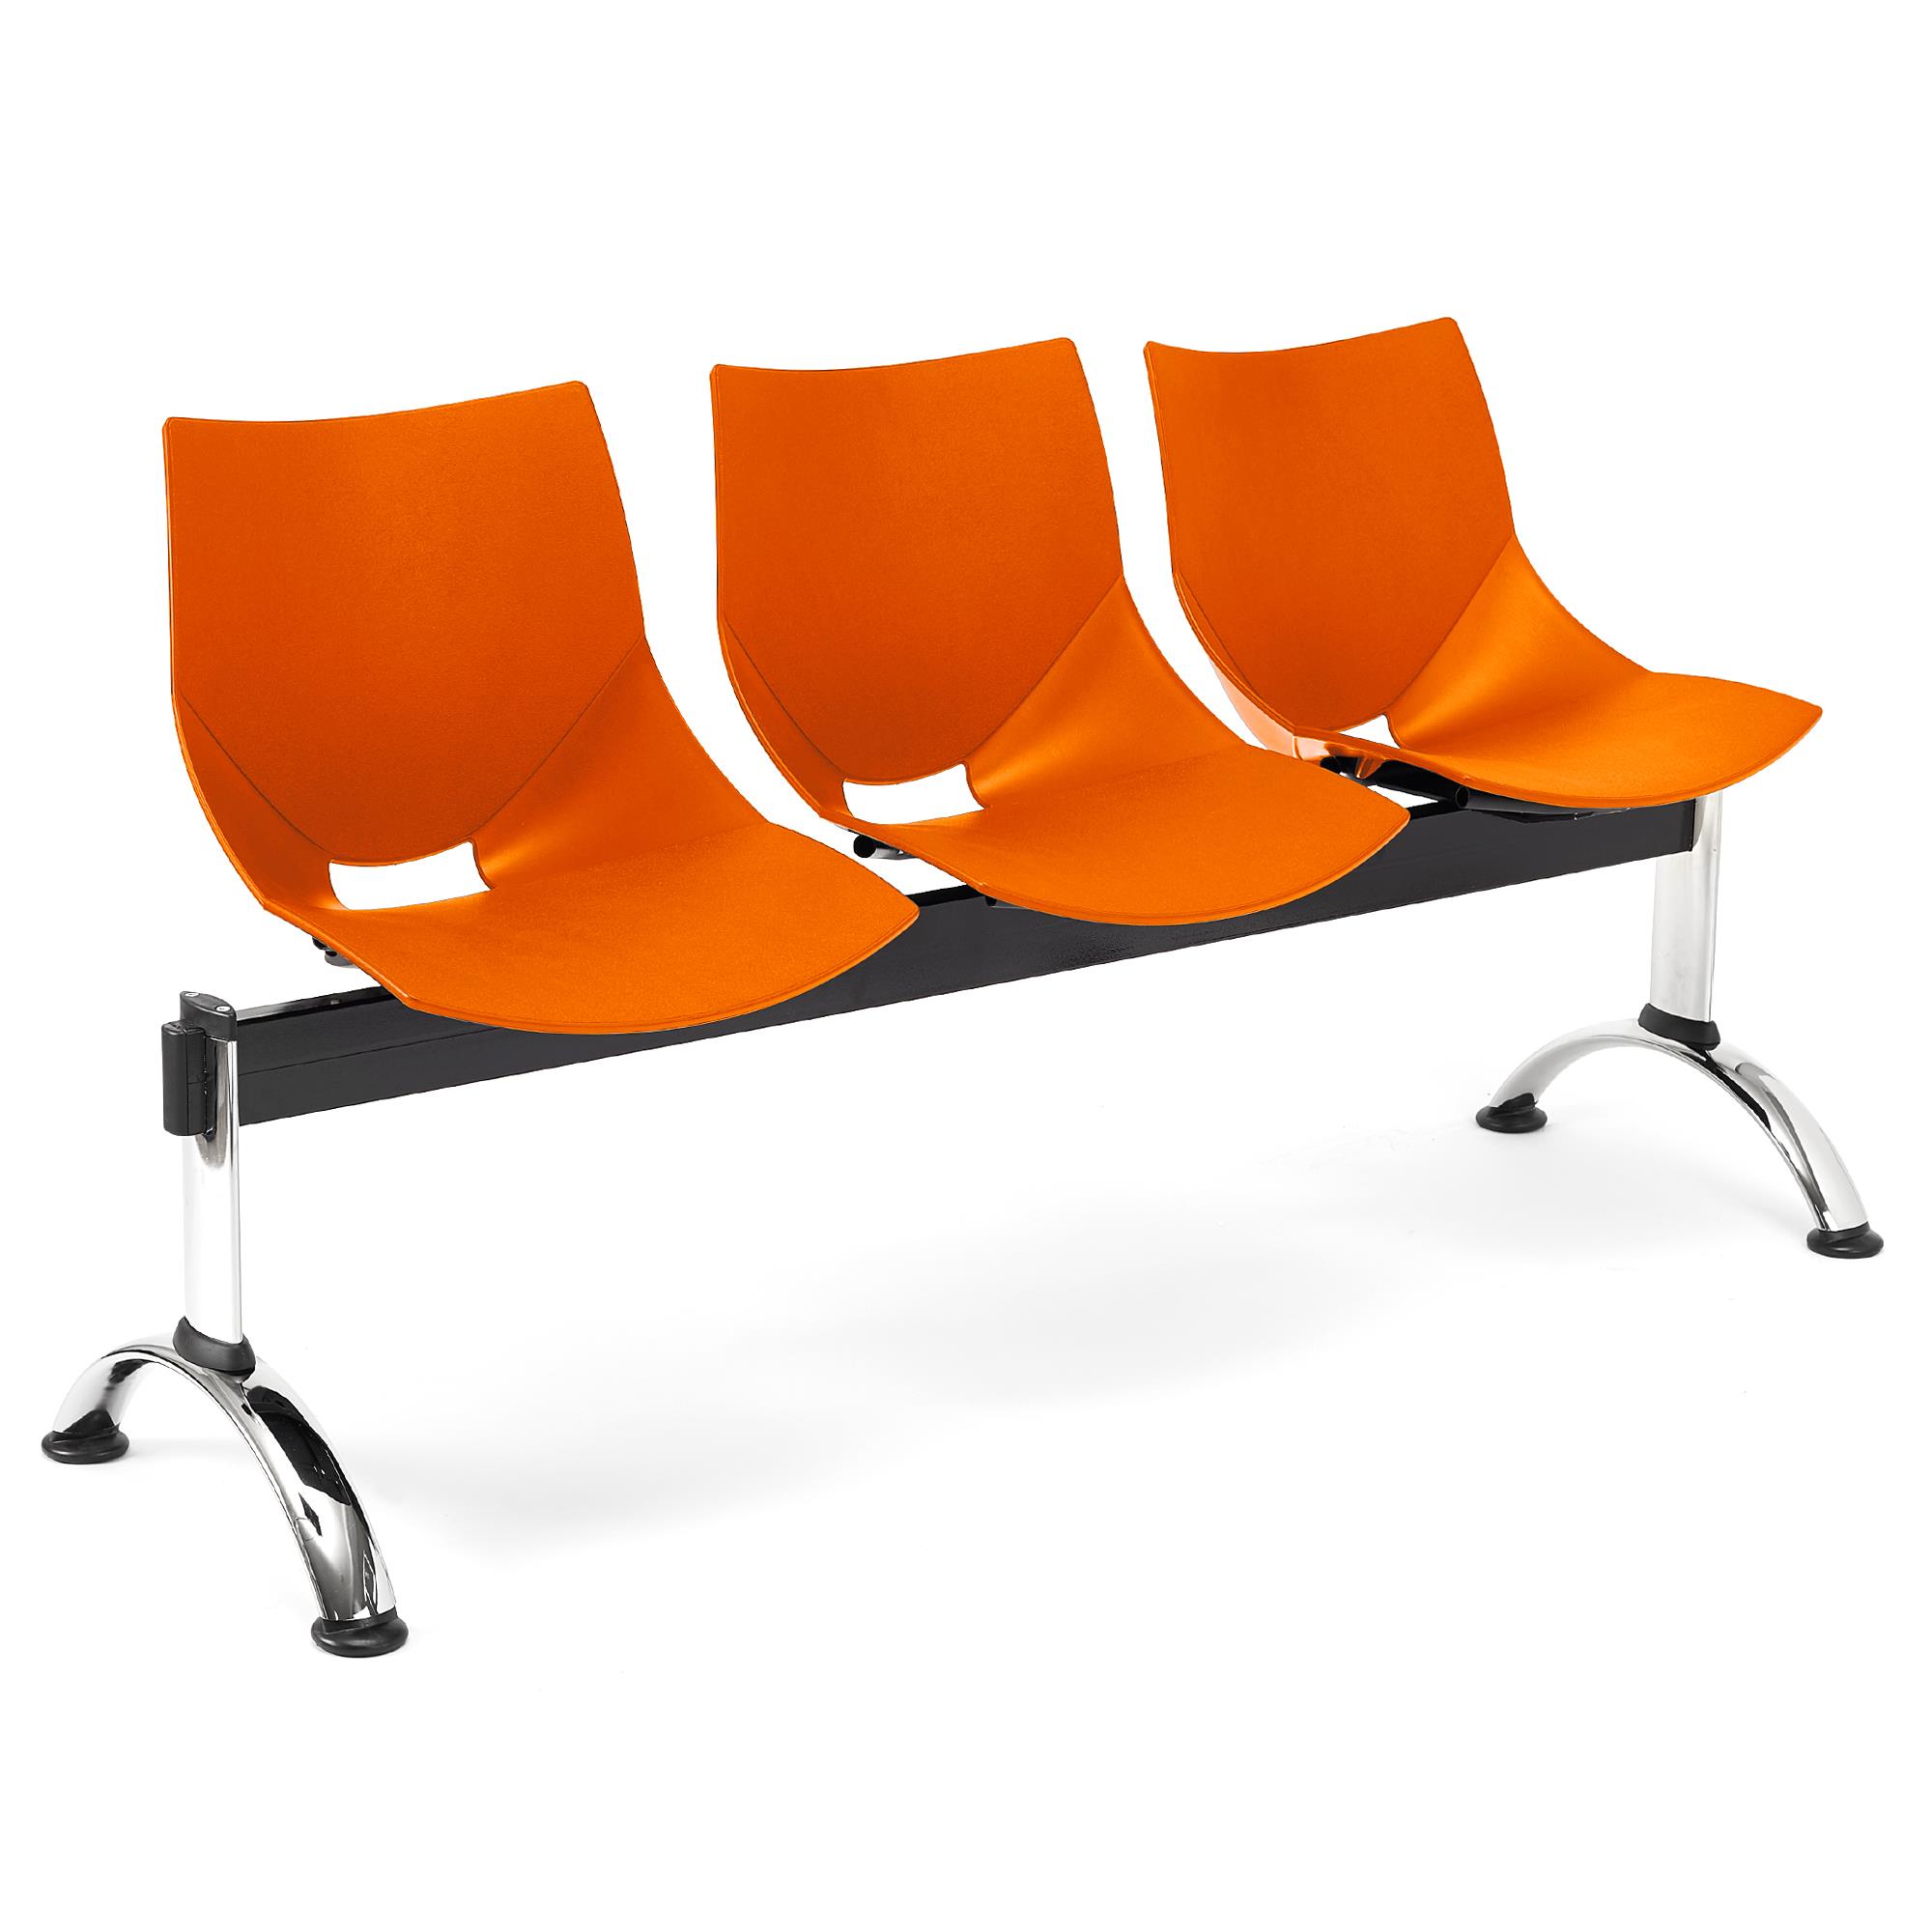 Banc salle d'attente 3 sièges AMIR,  Structure en Métal, Plastique Orange